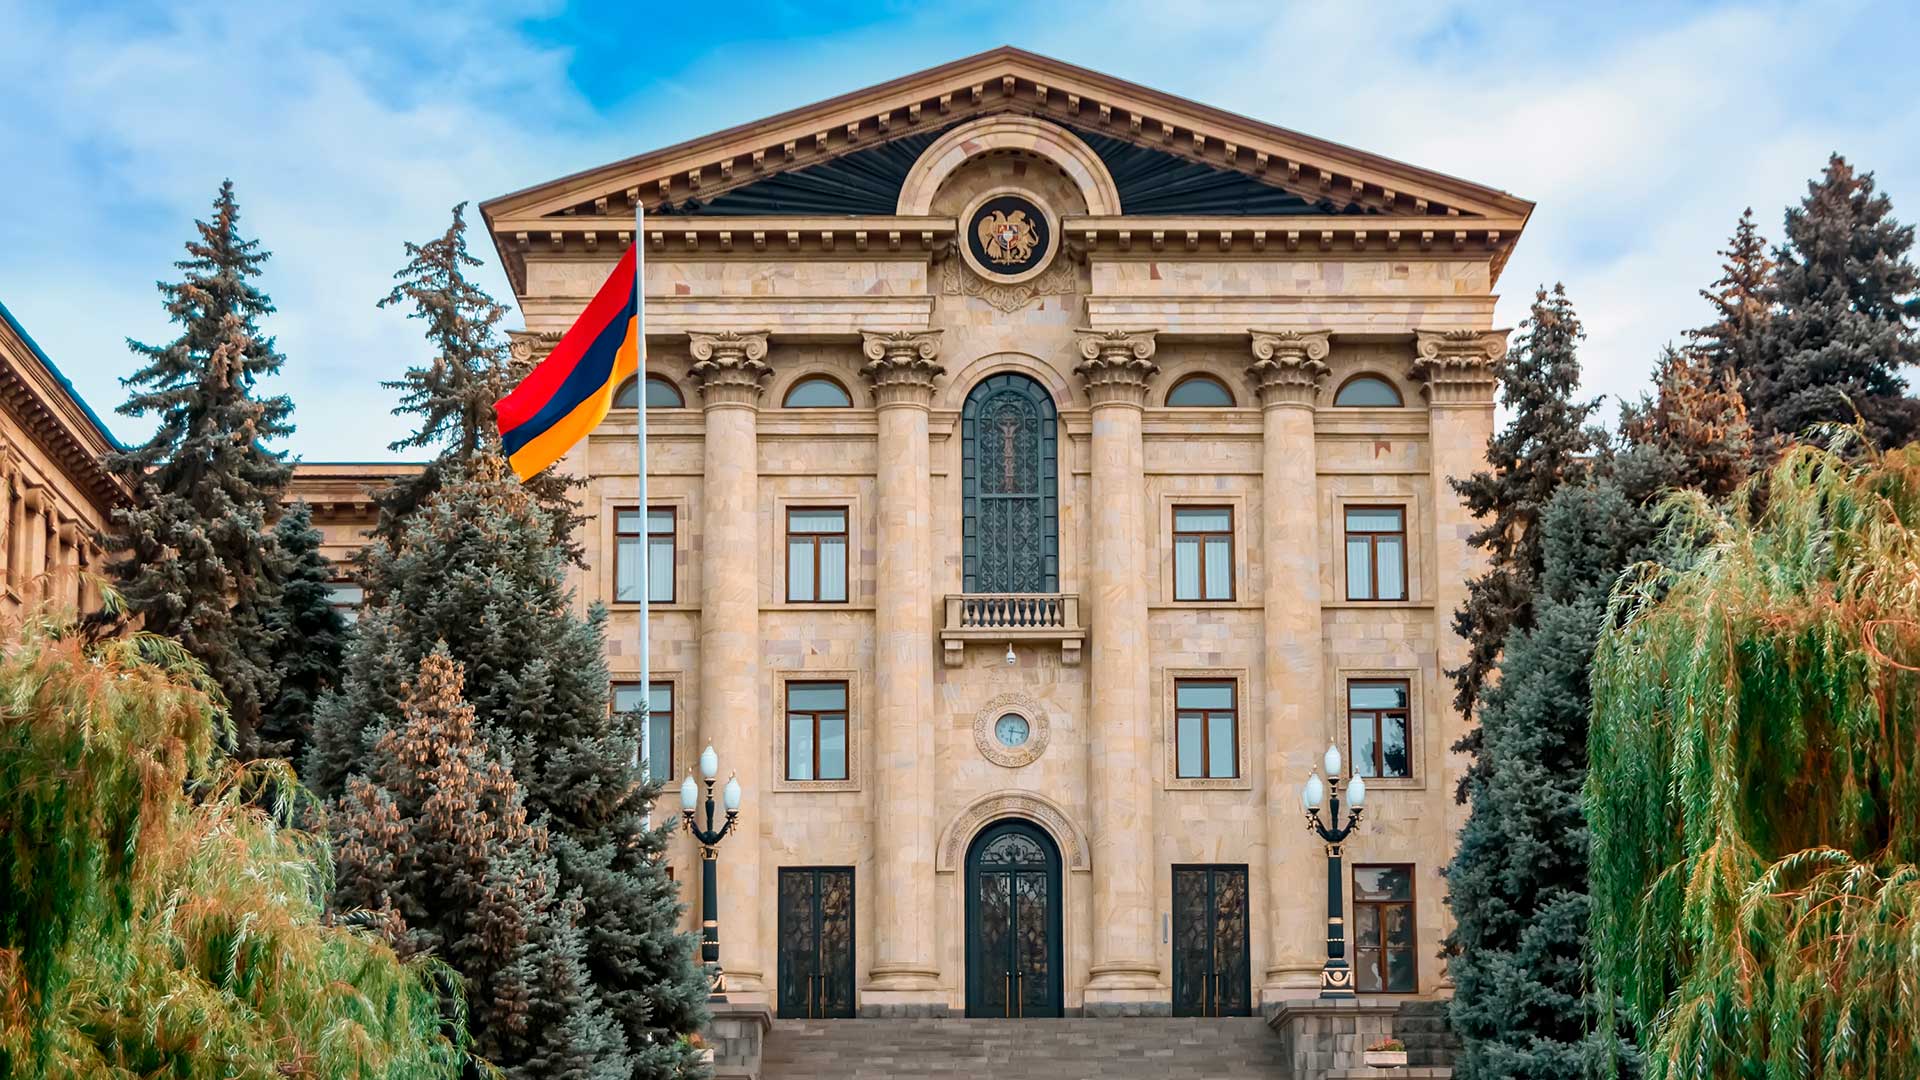 Гражданство Армении